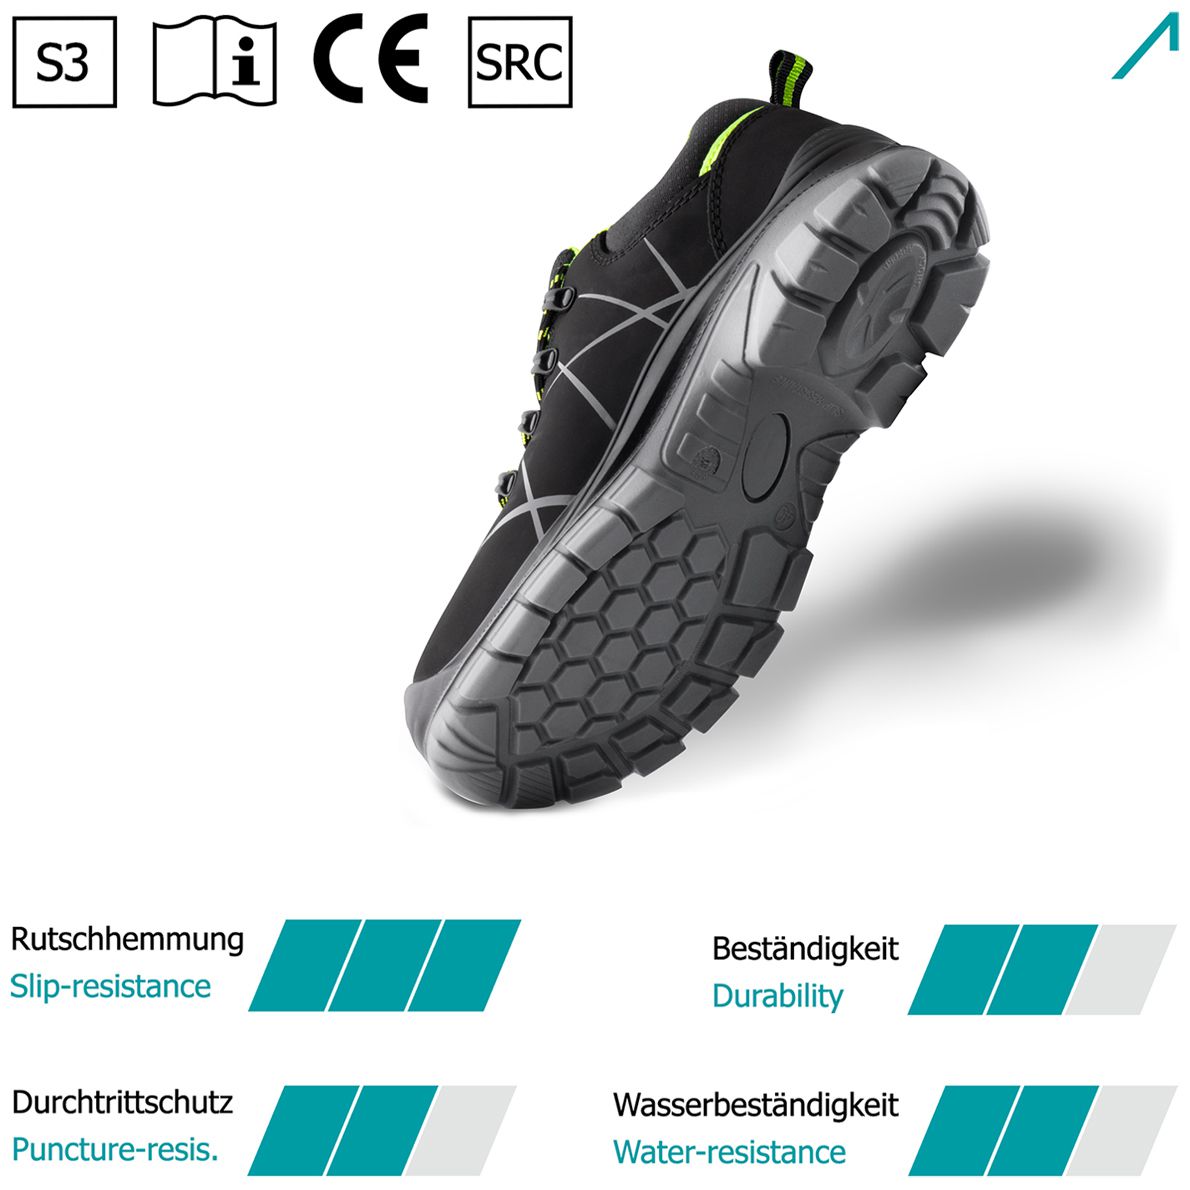 ACE Constructor S3-Arbeits-Sneakers - mit Stahlkappe - Sicherheits-Schuhe für die Arbeit  - Schwarz/Grün - 41